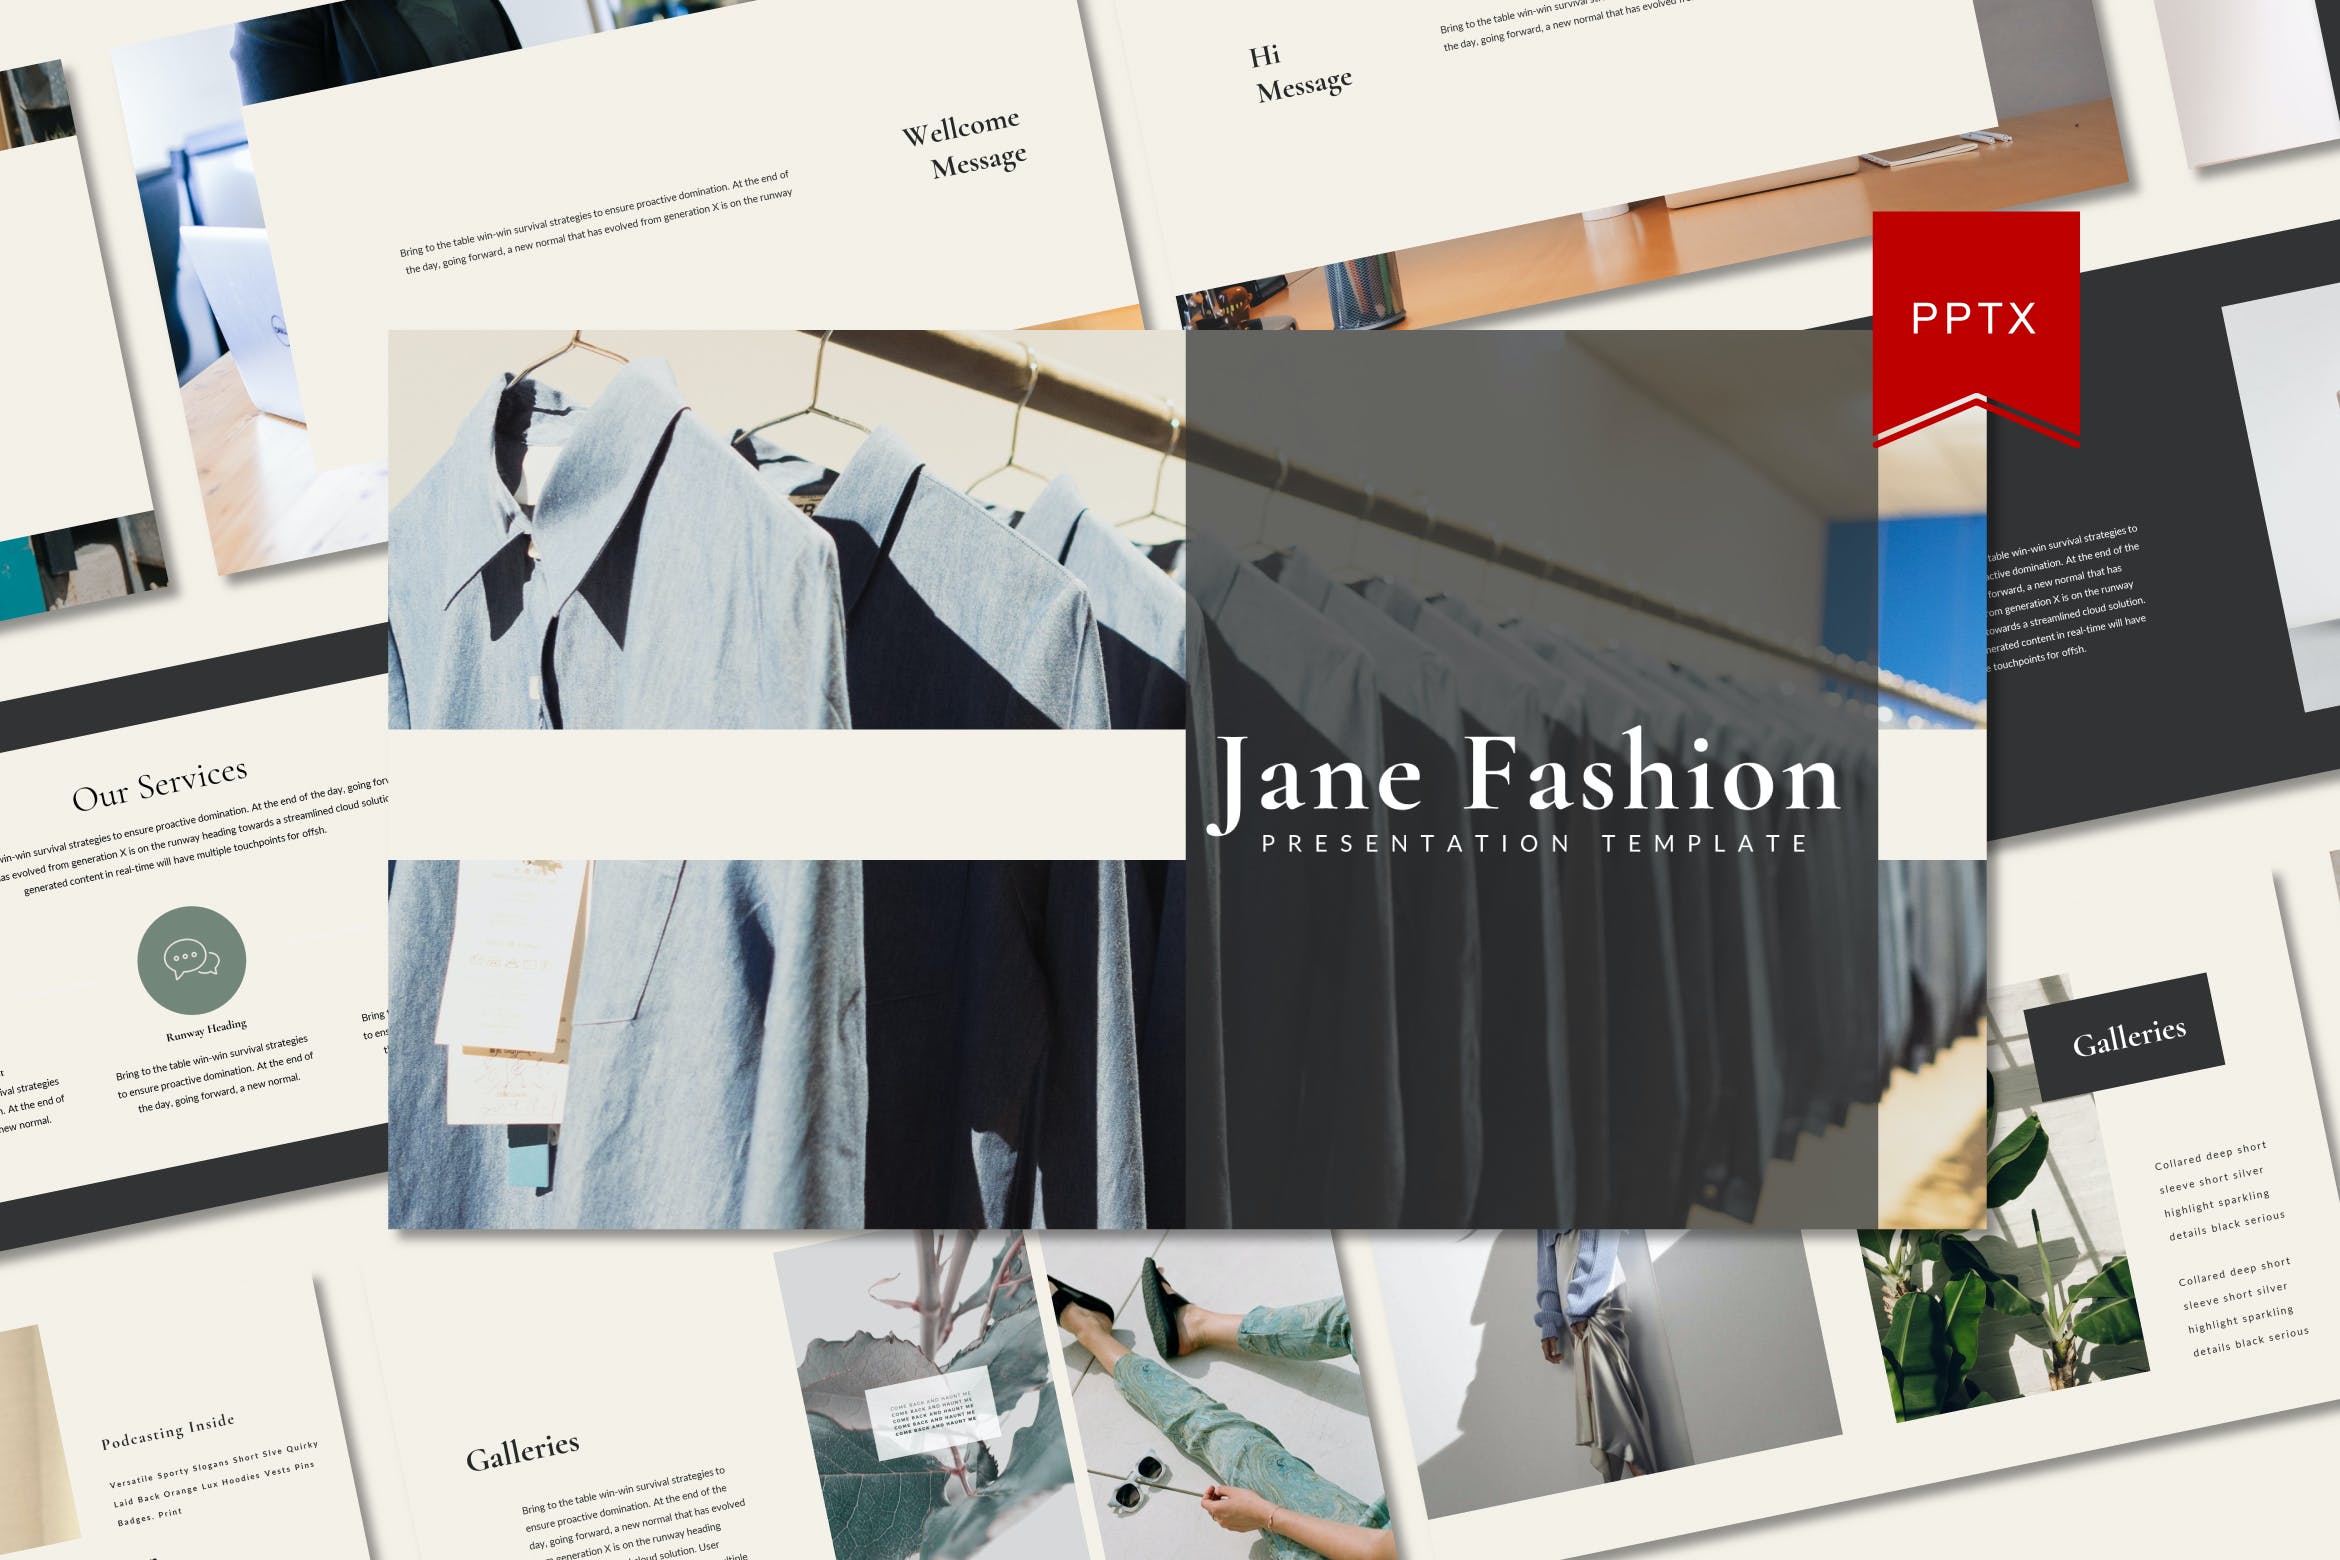 简约时尚服装品牌PowerPoint演示模板 Jane Fashion Powerpoint Template 幻灯图表 第1张